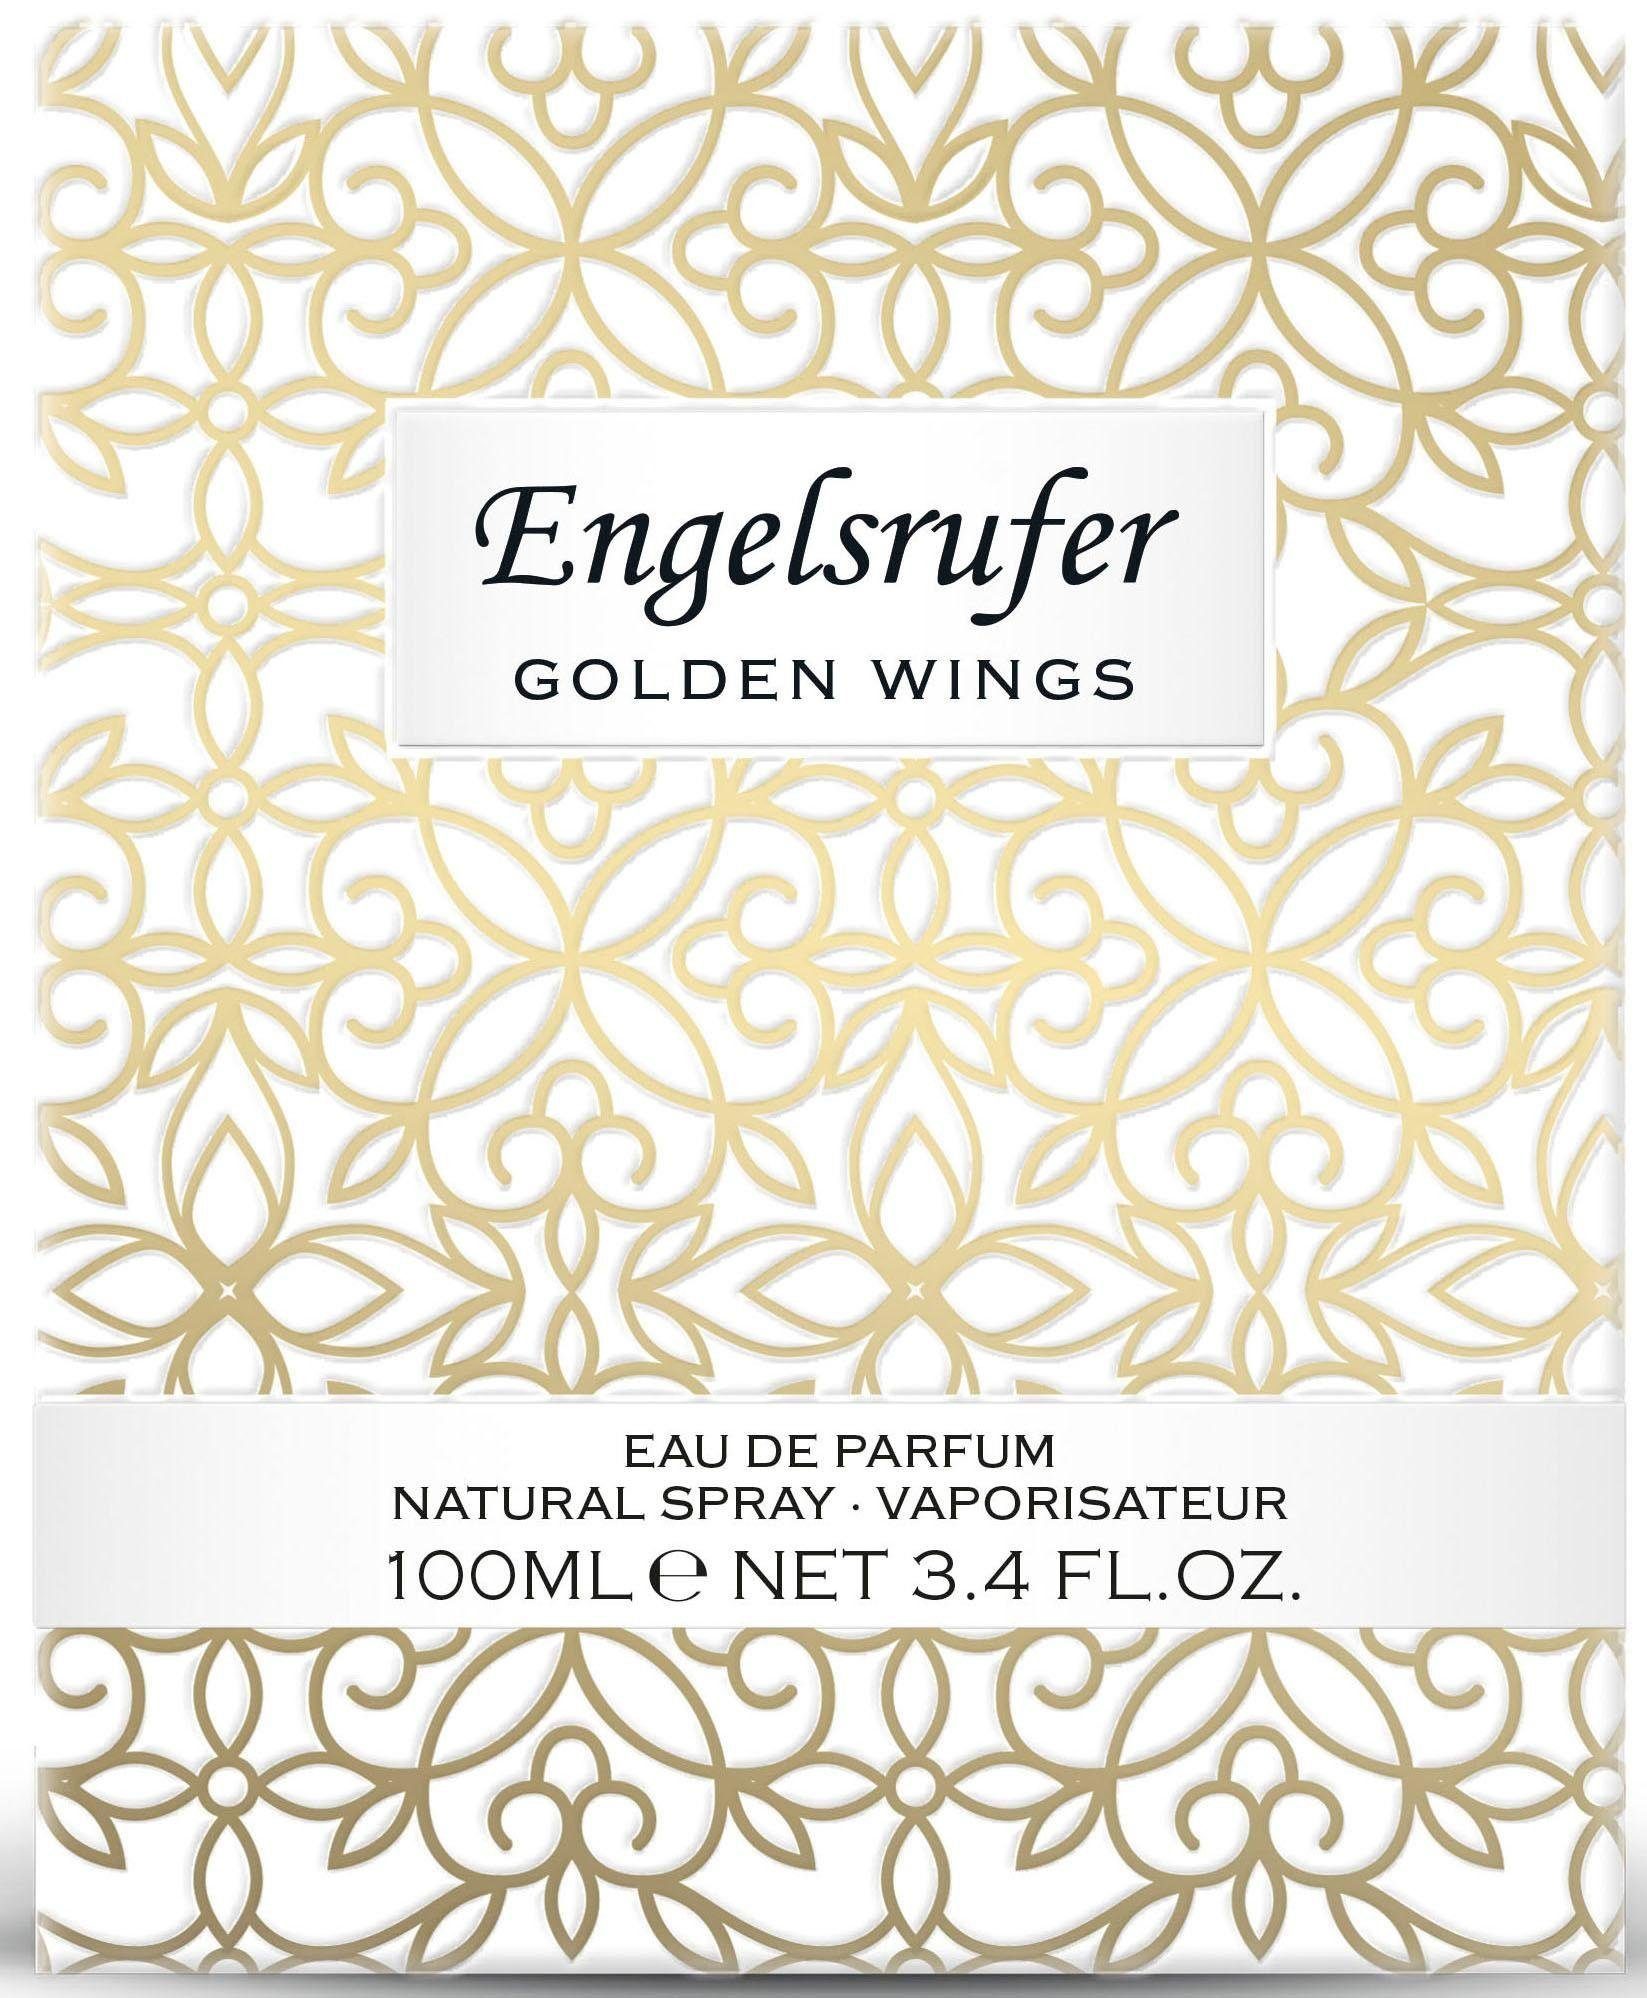 Engelsrufer Eau de Parfum Golden Wings